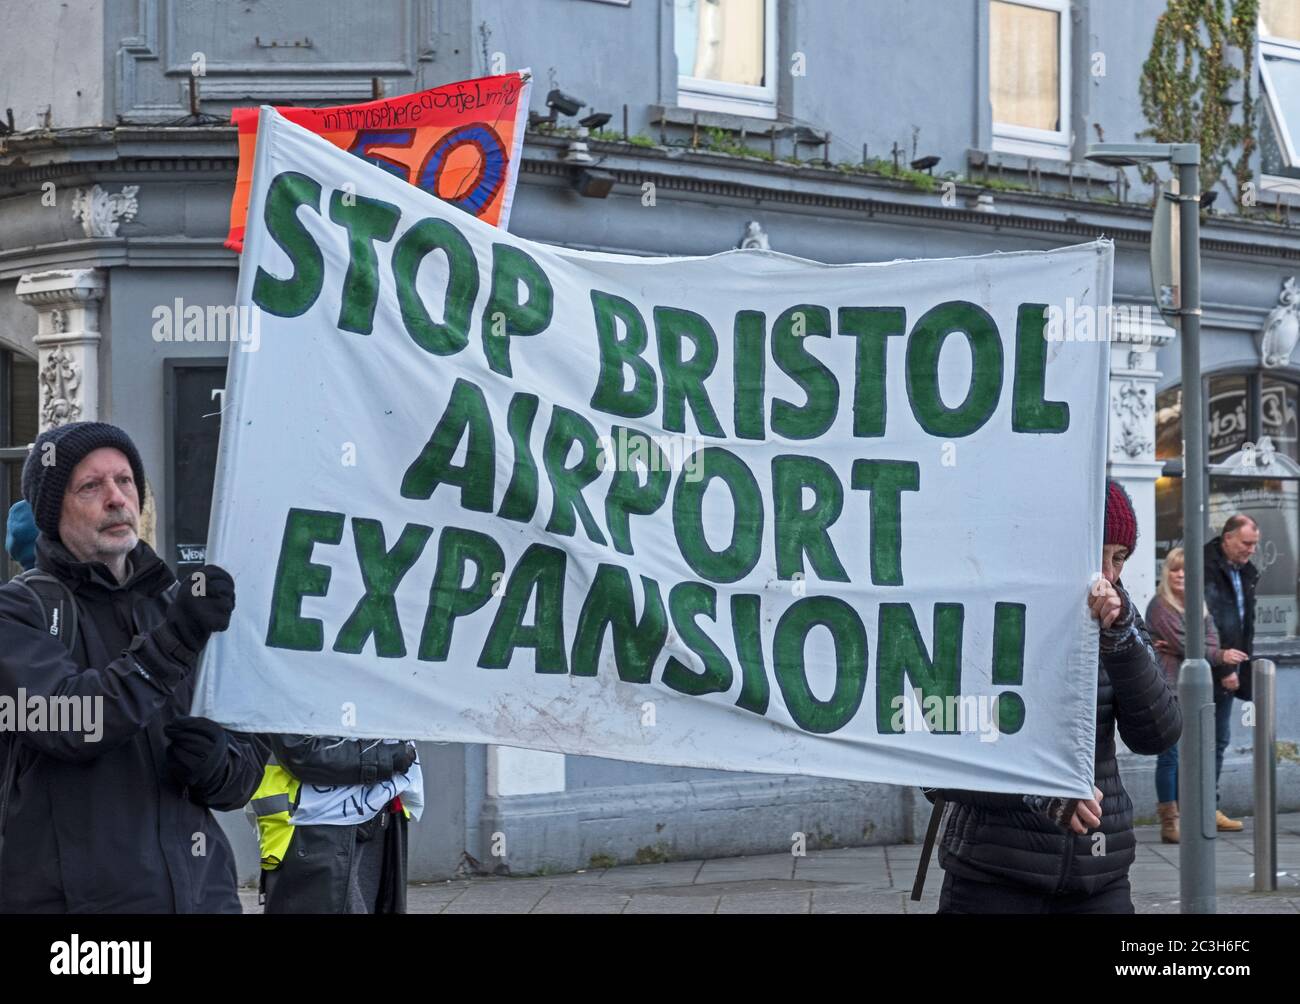 Weston-super-Mare, Royaume-Uni, 8 février 2020. Les manifestants protestent contre l’expansion prévue de l’aéroport de Bristol à l’occasion d’une réunion du comité de planification et de réglementation du Conseil du Somerset du Nord, le 10 février, qui décidera si l’expansion doit être approuvée. Banque D'Images